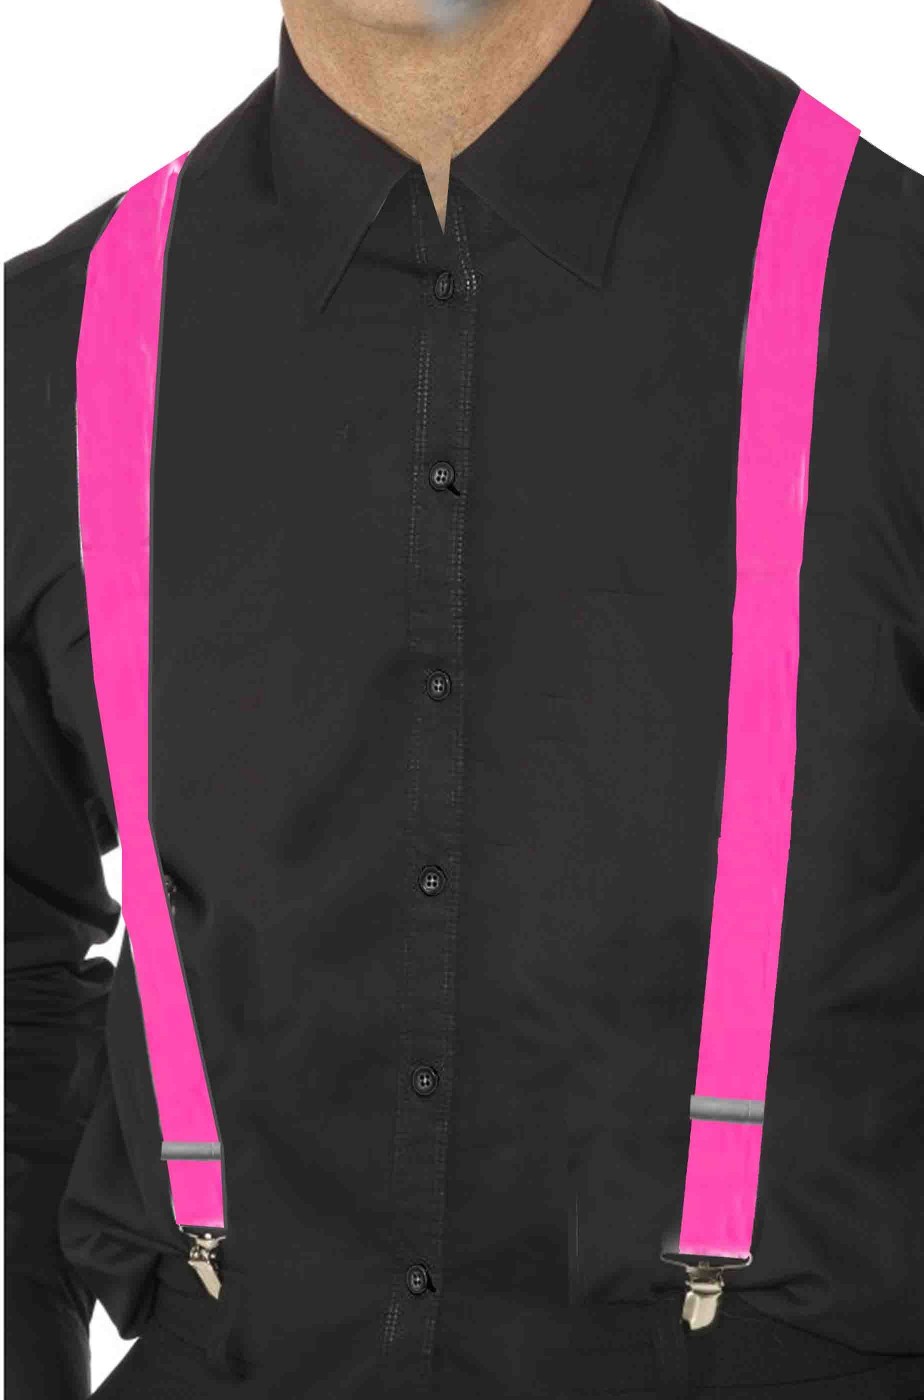 Bretelle rosa per pantaloni fluo neon fosforescenti